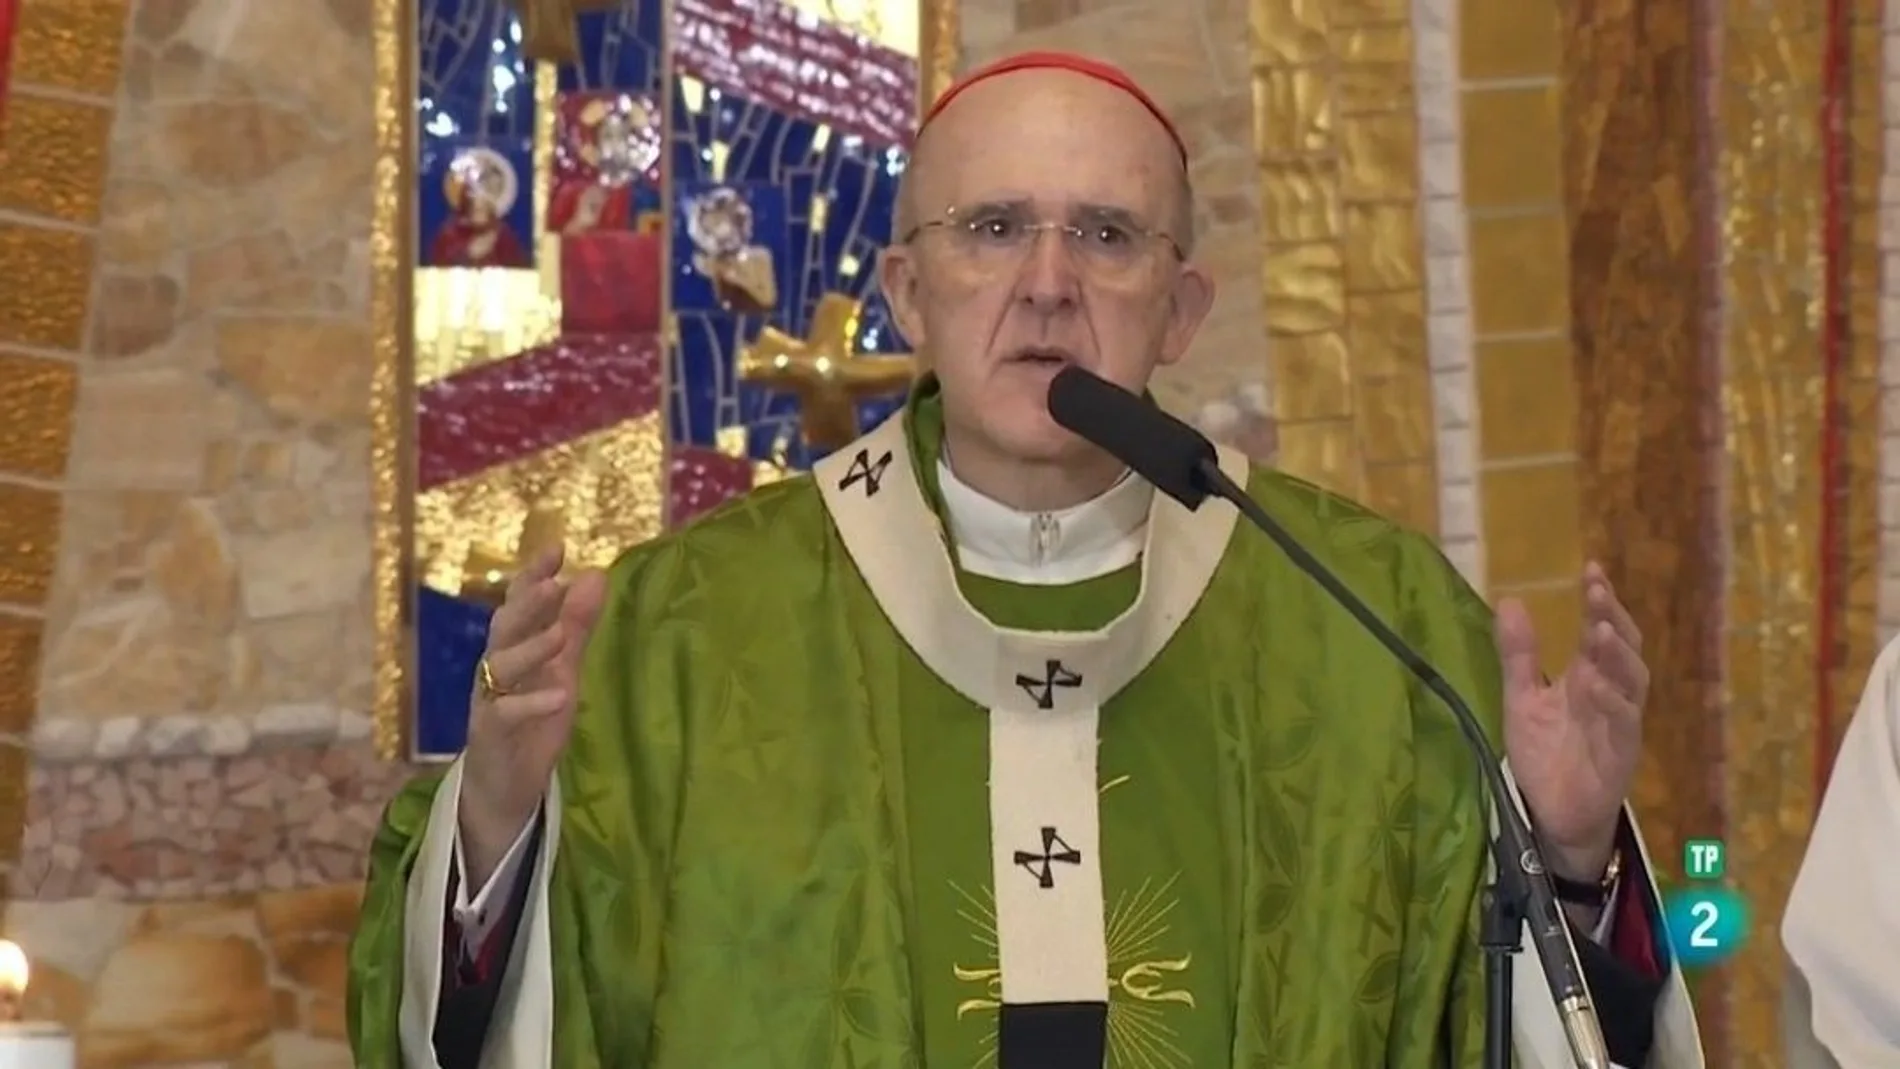 el cardenal arzobispo de Madrid Carlos Osoro